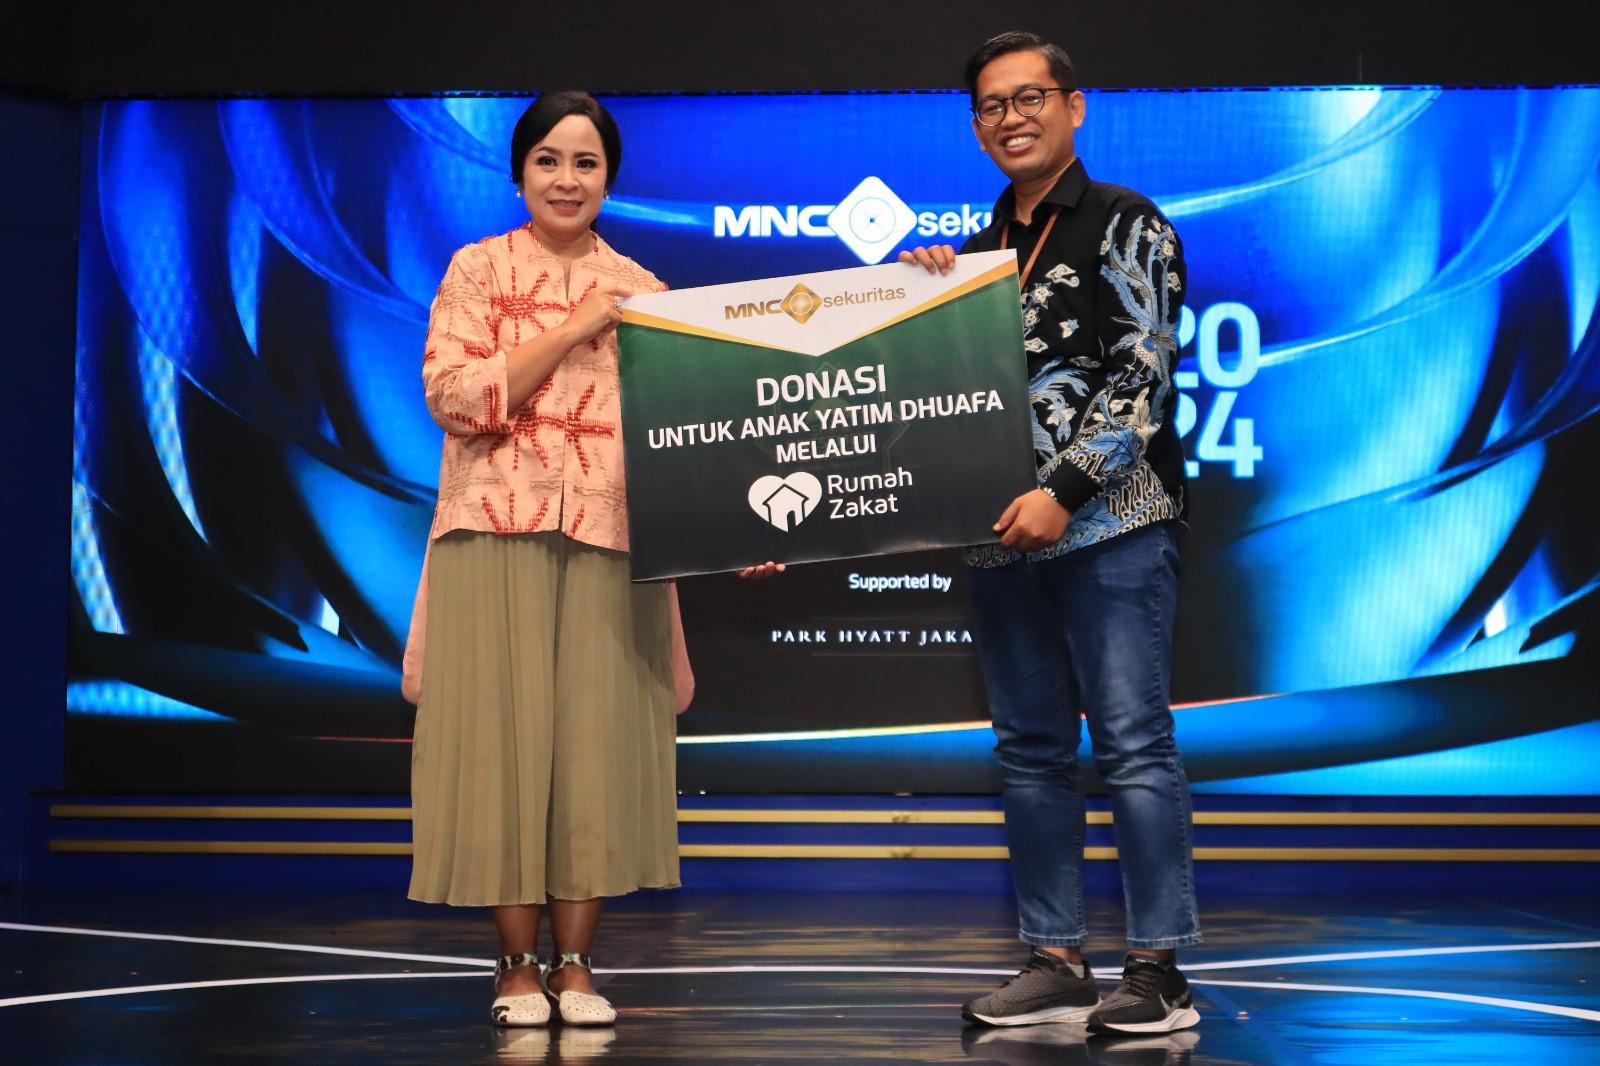 MNC Sekuritas Salurkan Donasi Saham dan Uang Rp21,4 Juta ke Rumah Zakat Indonesia